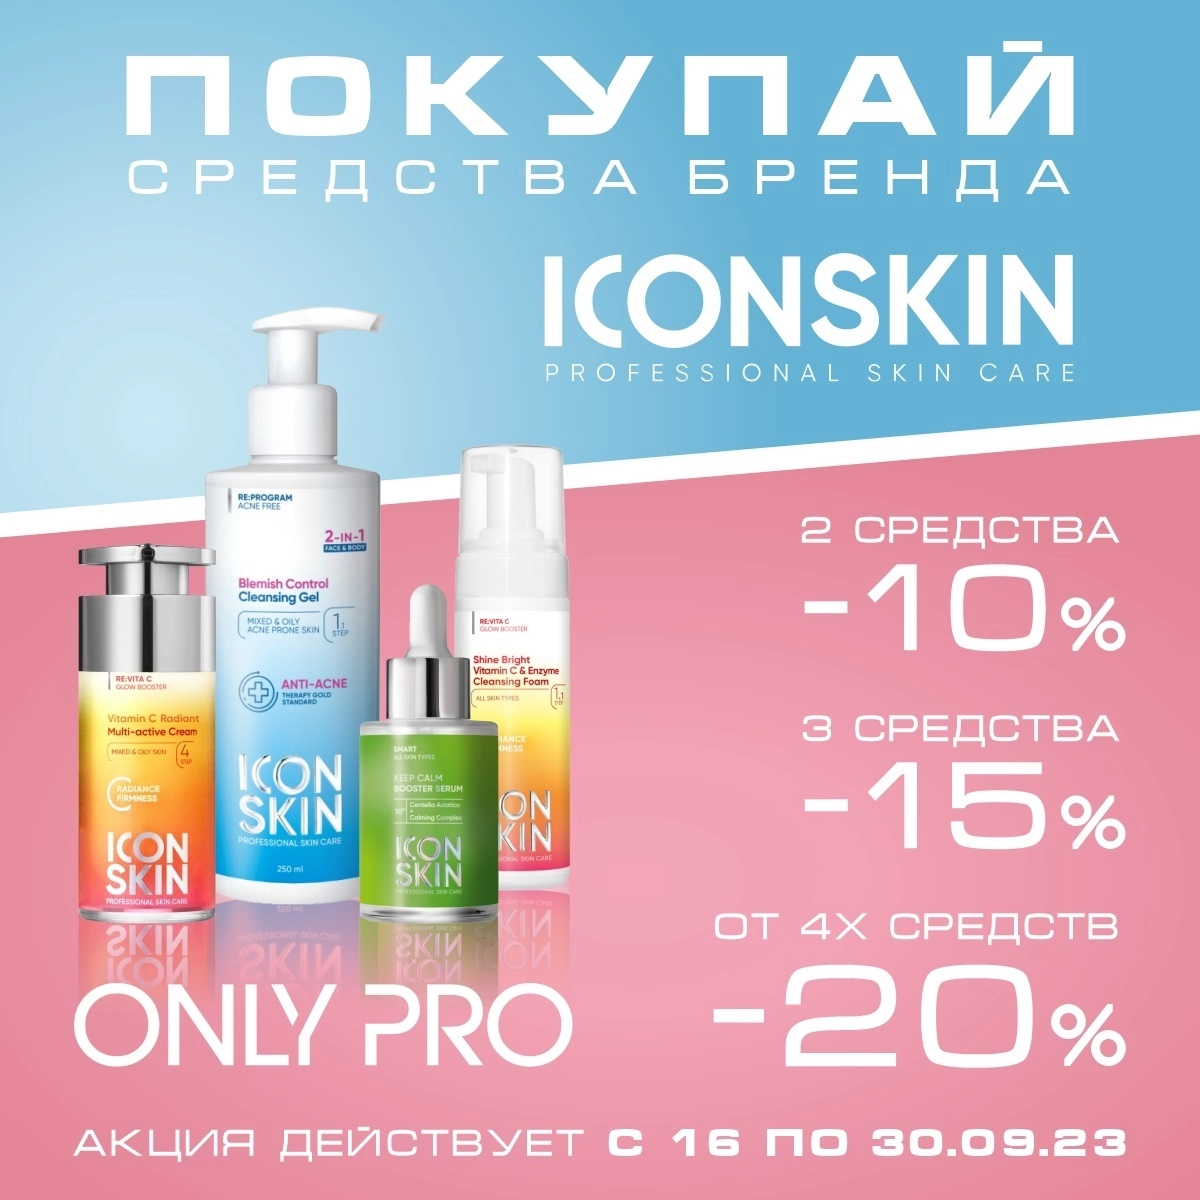 Акция на icon skin , при покупке 2 шт - 10% скидка, 3- 15%, 4 и более - 20%